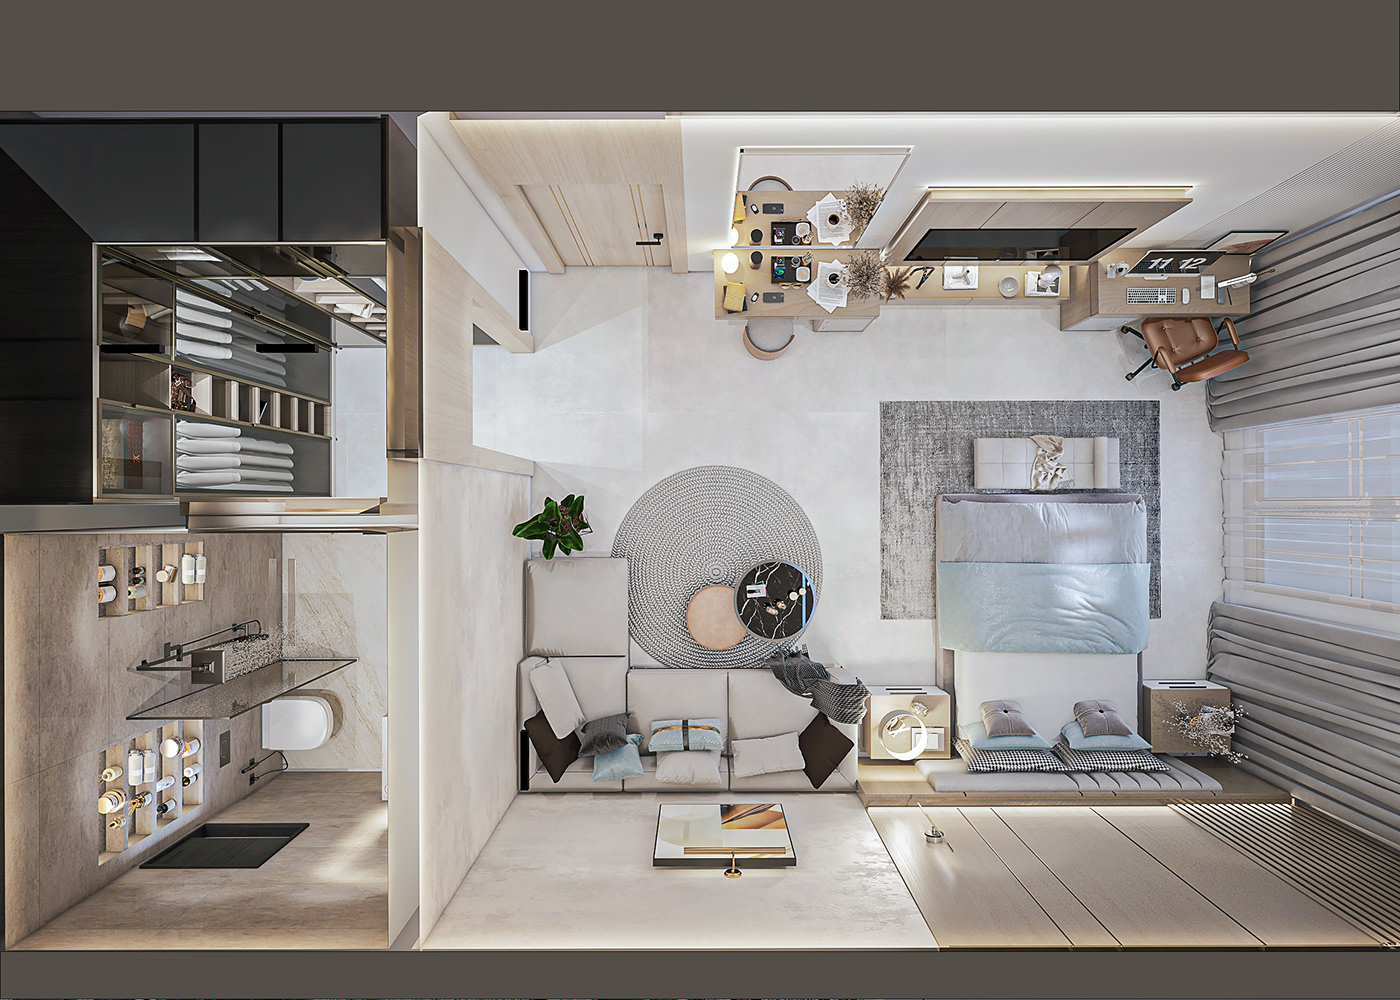 design babyblue Interior architecture visualization 3ds max Render vray modern wooddesign